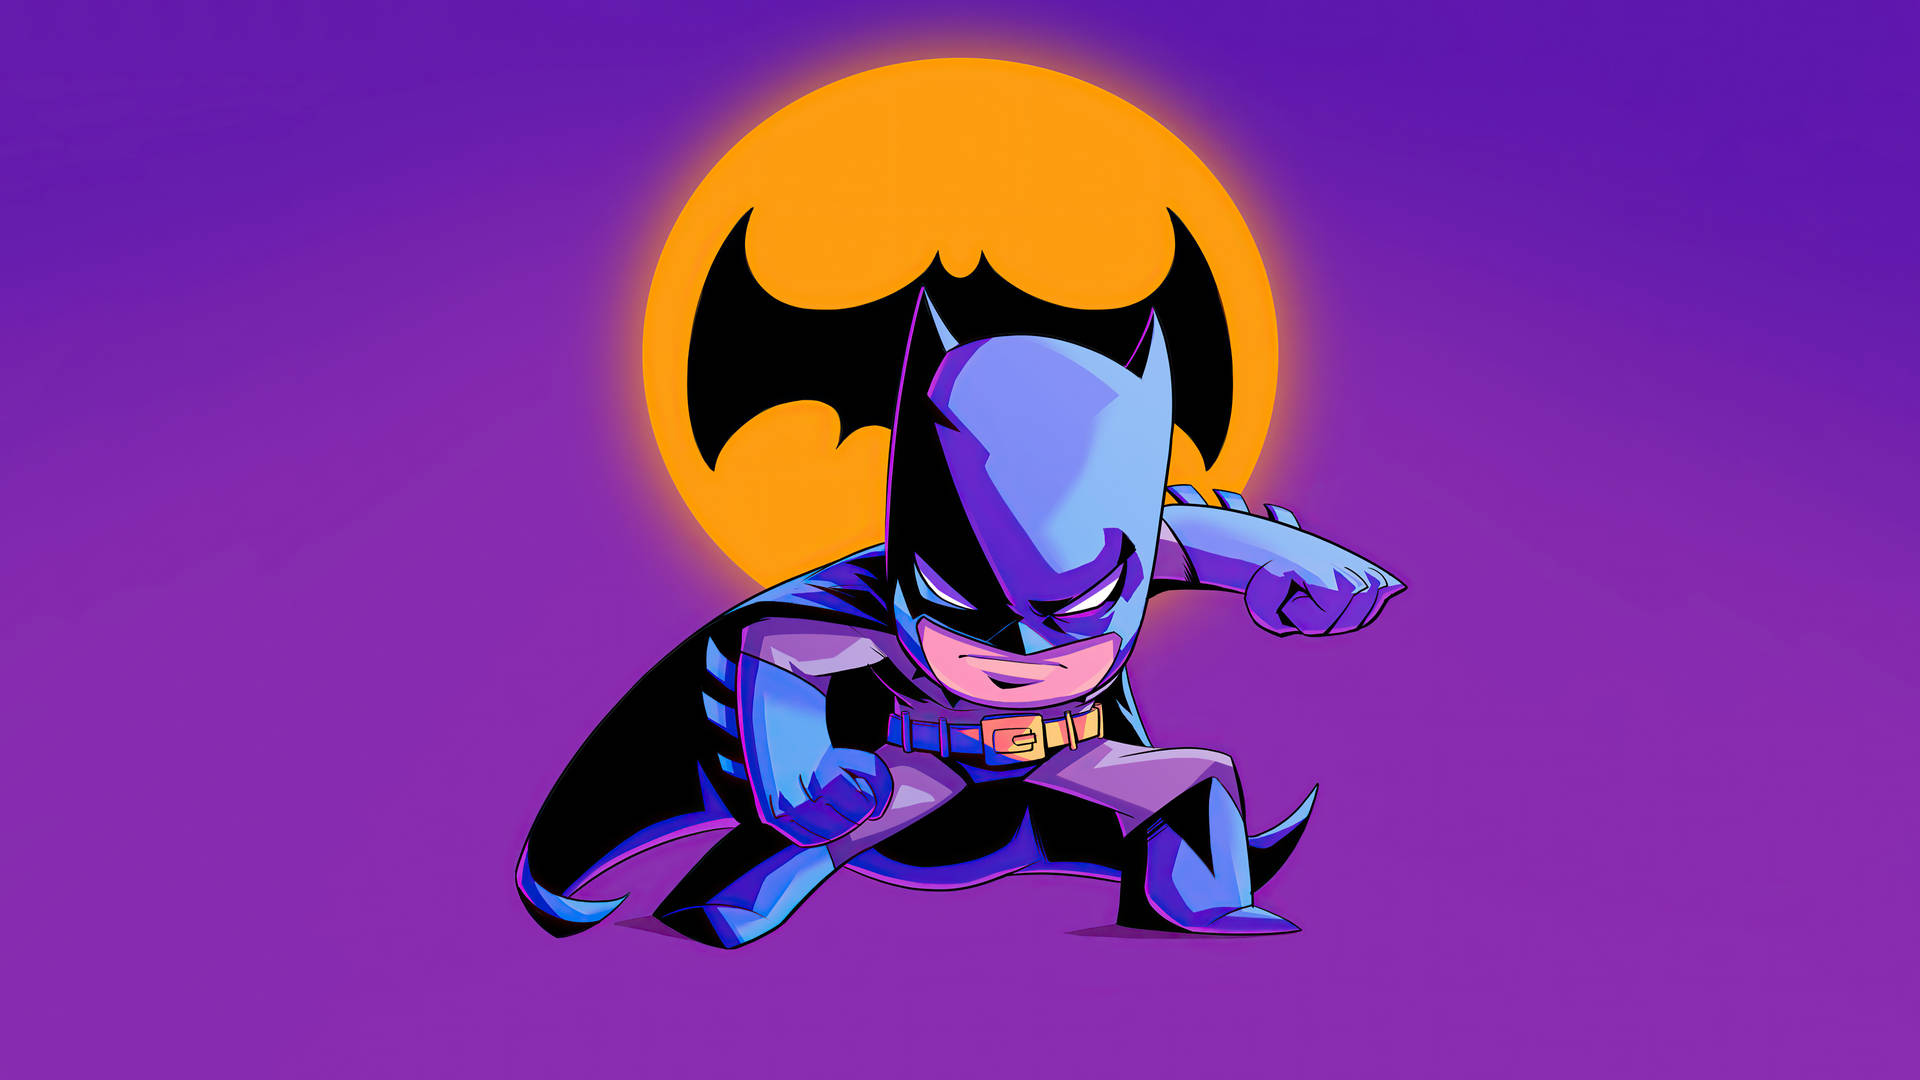 Chibi Batman Cartoon